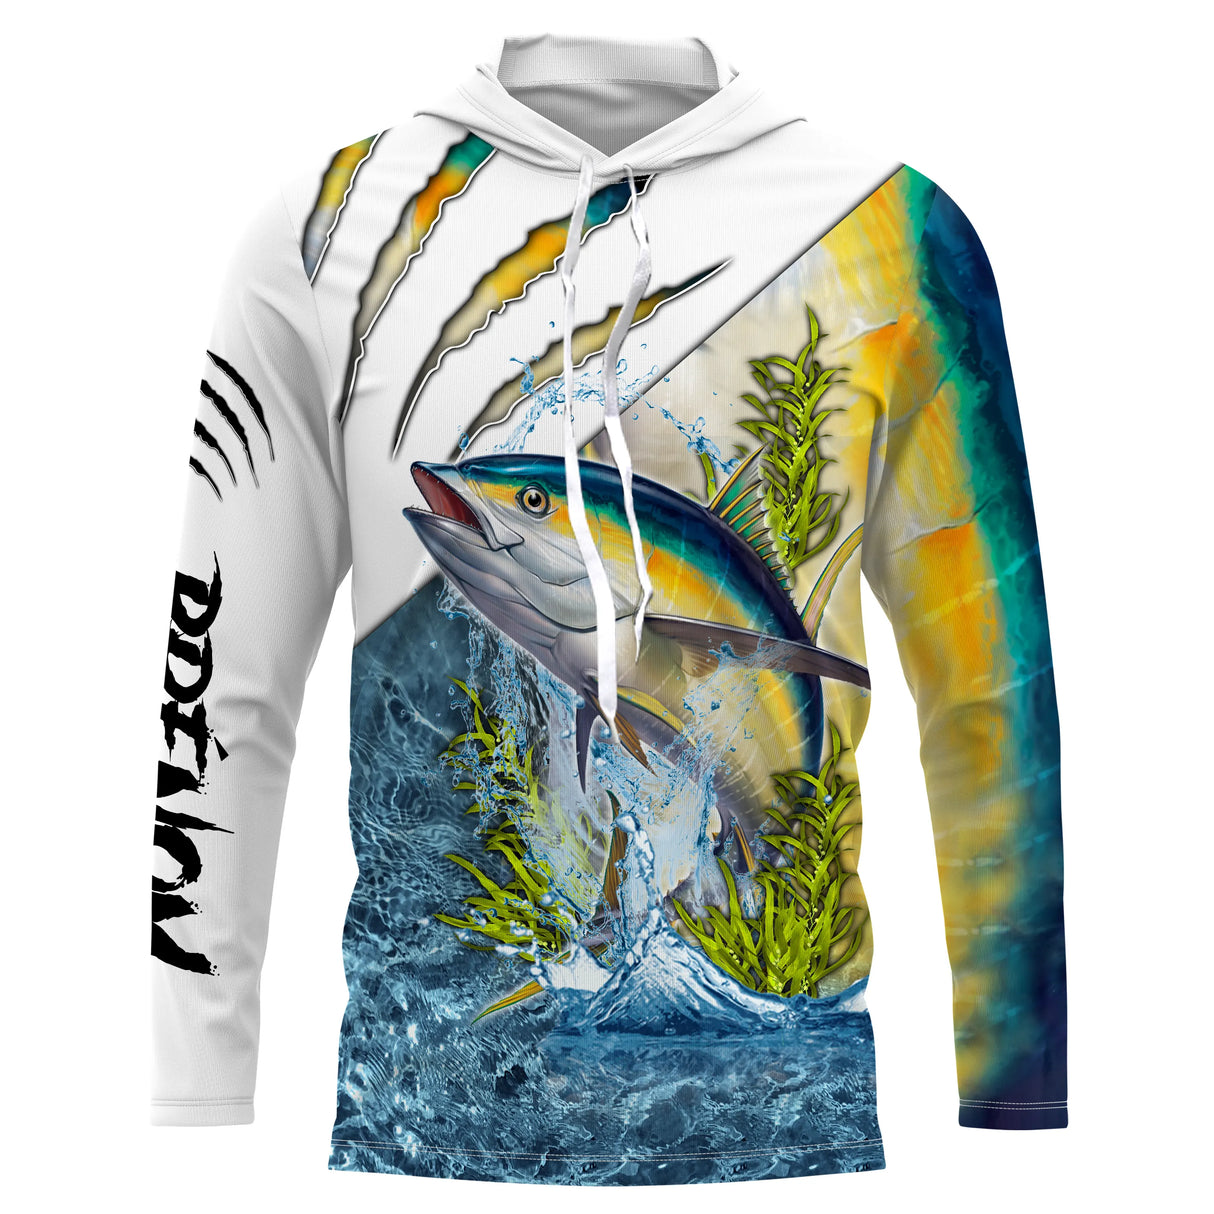 Camiseta, Sudadera con capucha, Jersey de pesca de atún con protección UV, Regalo de pescador personalizado - CT21112223